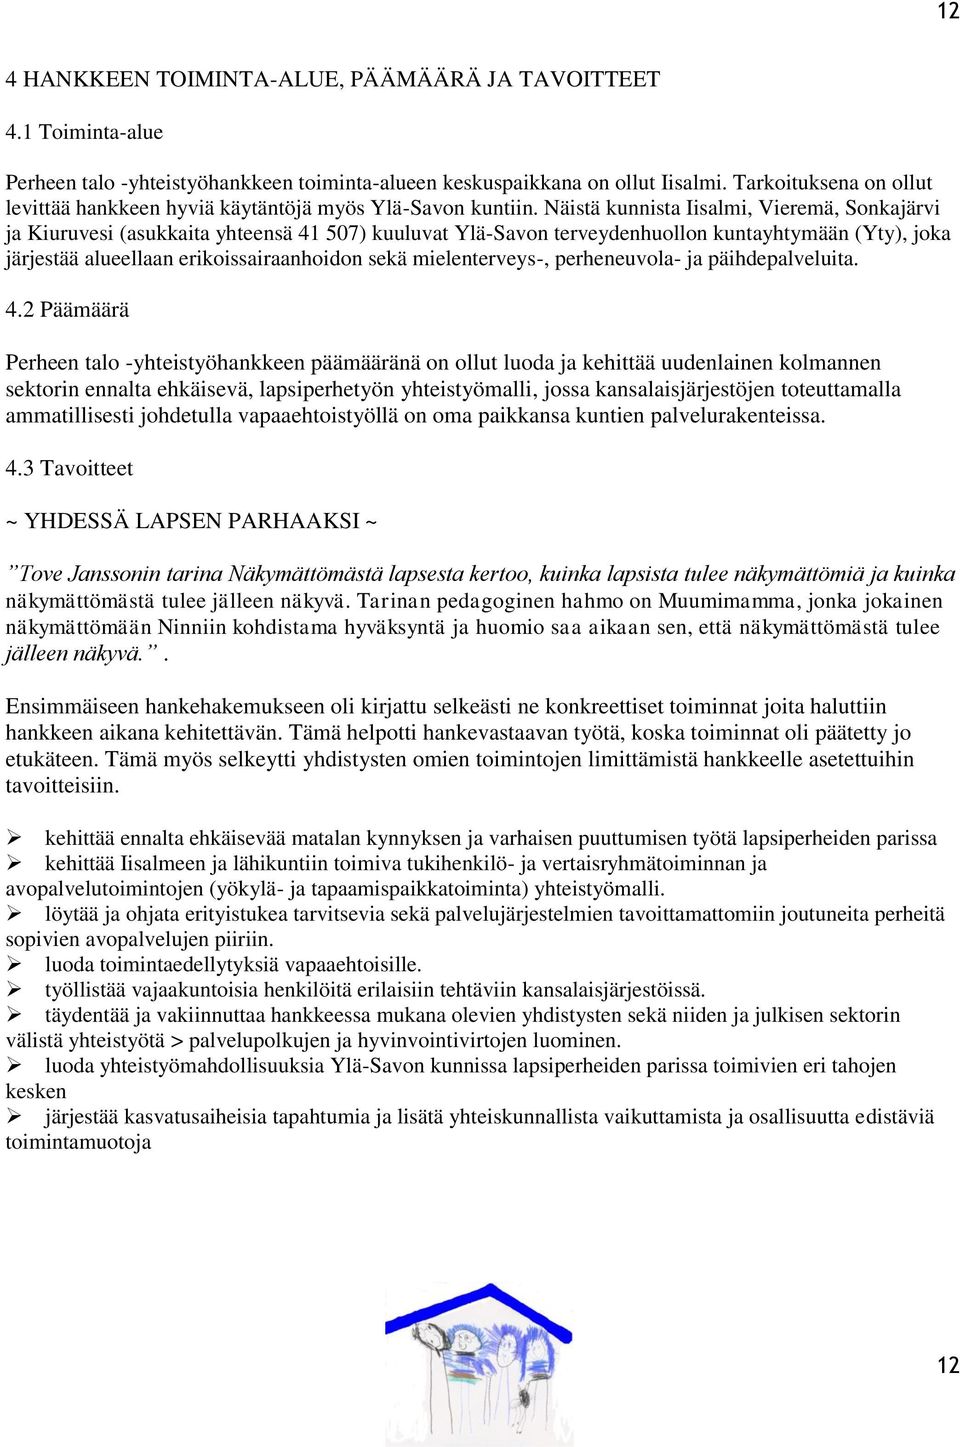 Näistä kunnista Iisalmi, Vieremä, Sonkajärvi ja Kiuruvesi (asukkaita yhteensä 41 507) kuuluvat Ylä-Savon terveydenhuollon kuntayhtymään (Yty), joka järjestää alueellaan erikoissairaanhoidon sekä